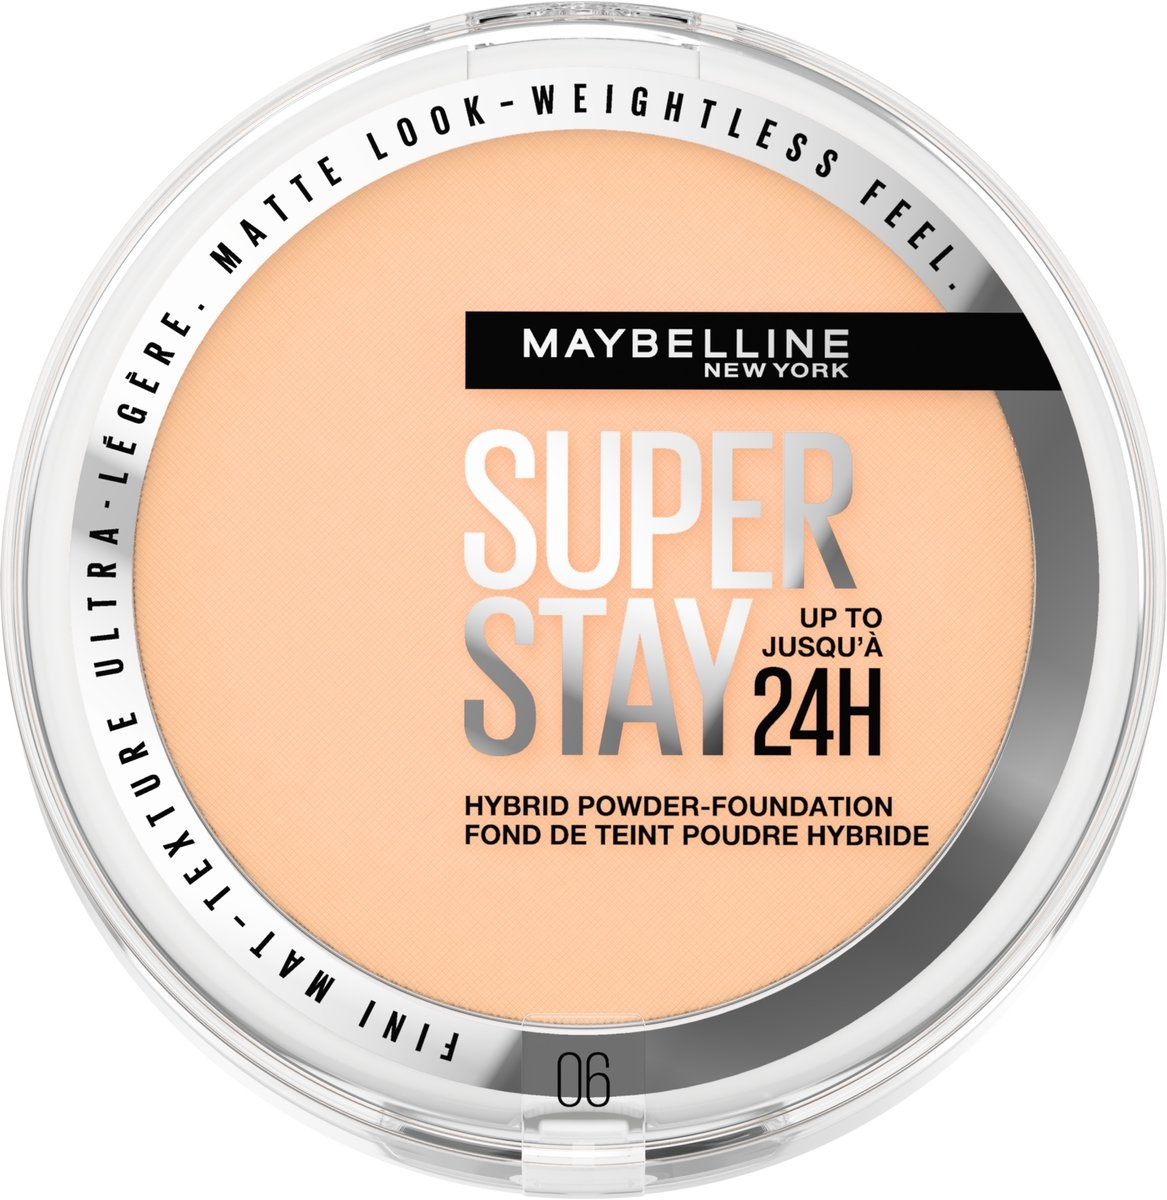 Maybelline New York - SuperStay 24H Hybrid Powder Foundation - 06